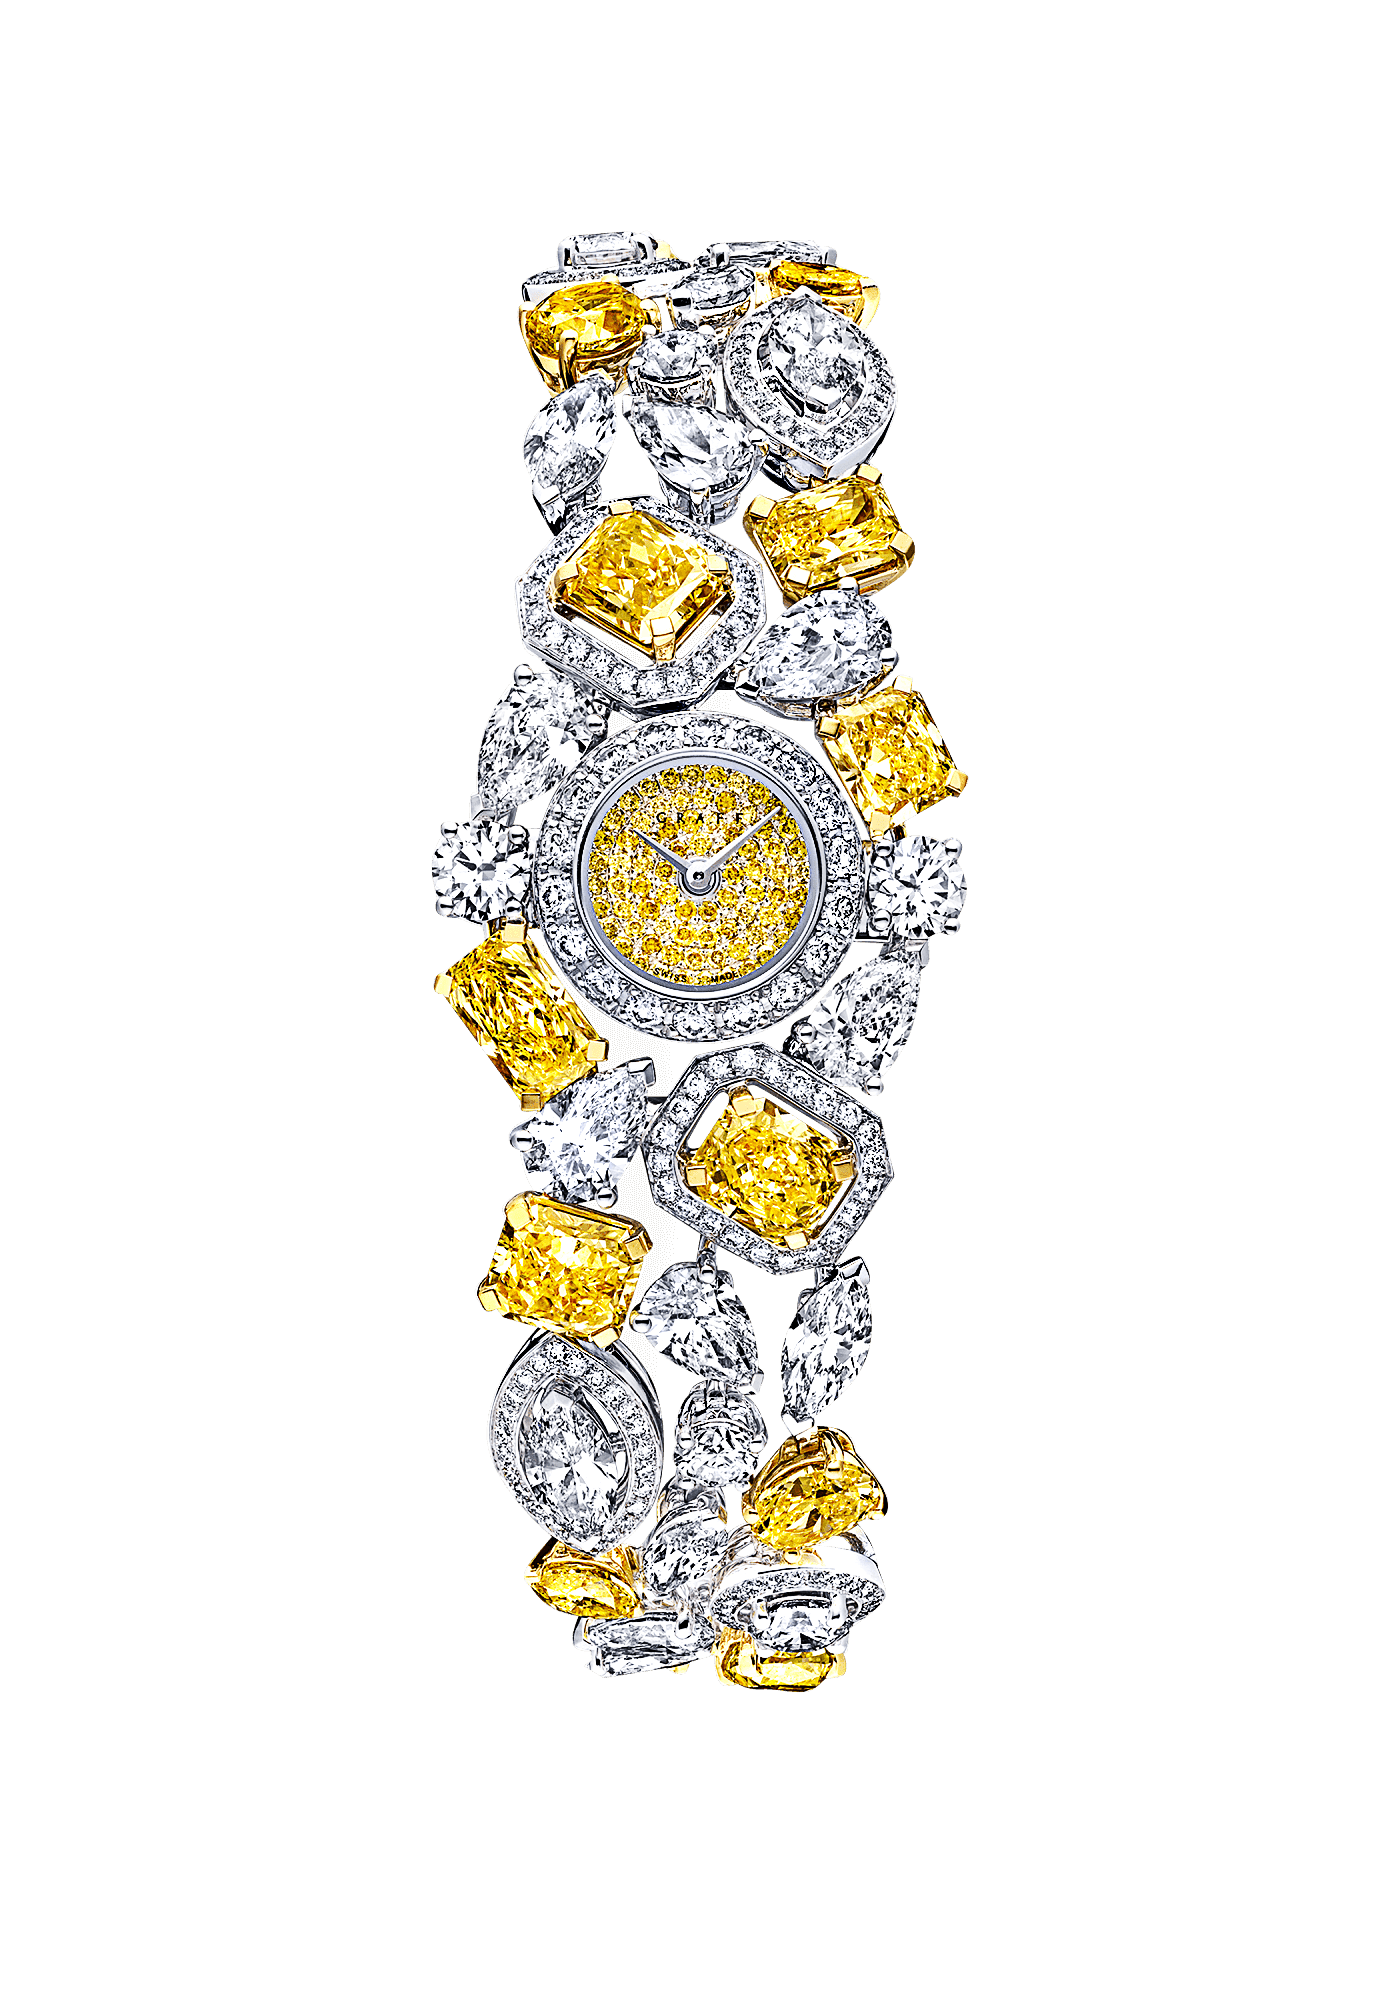 頂級珠寶品牌GRAFF “美呆了”的女性鑽石手表